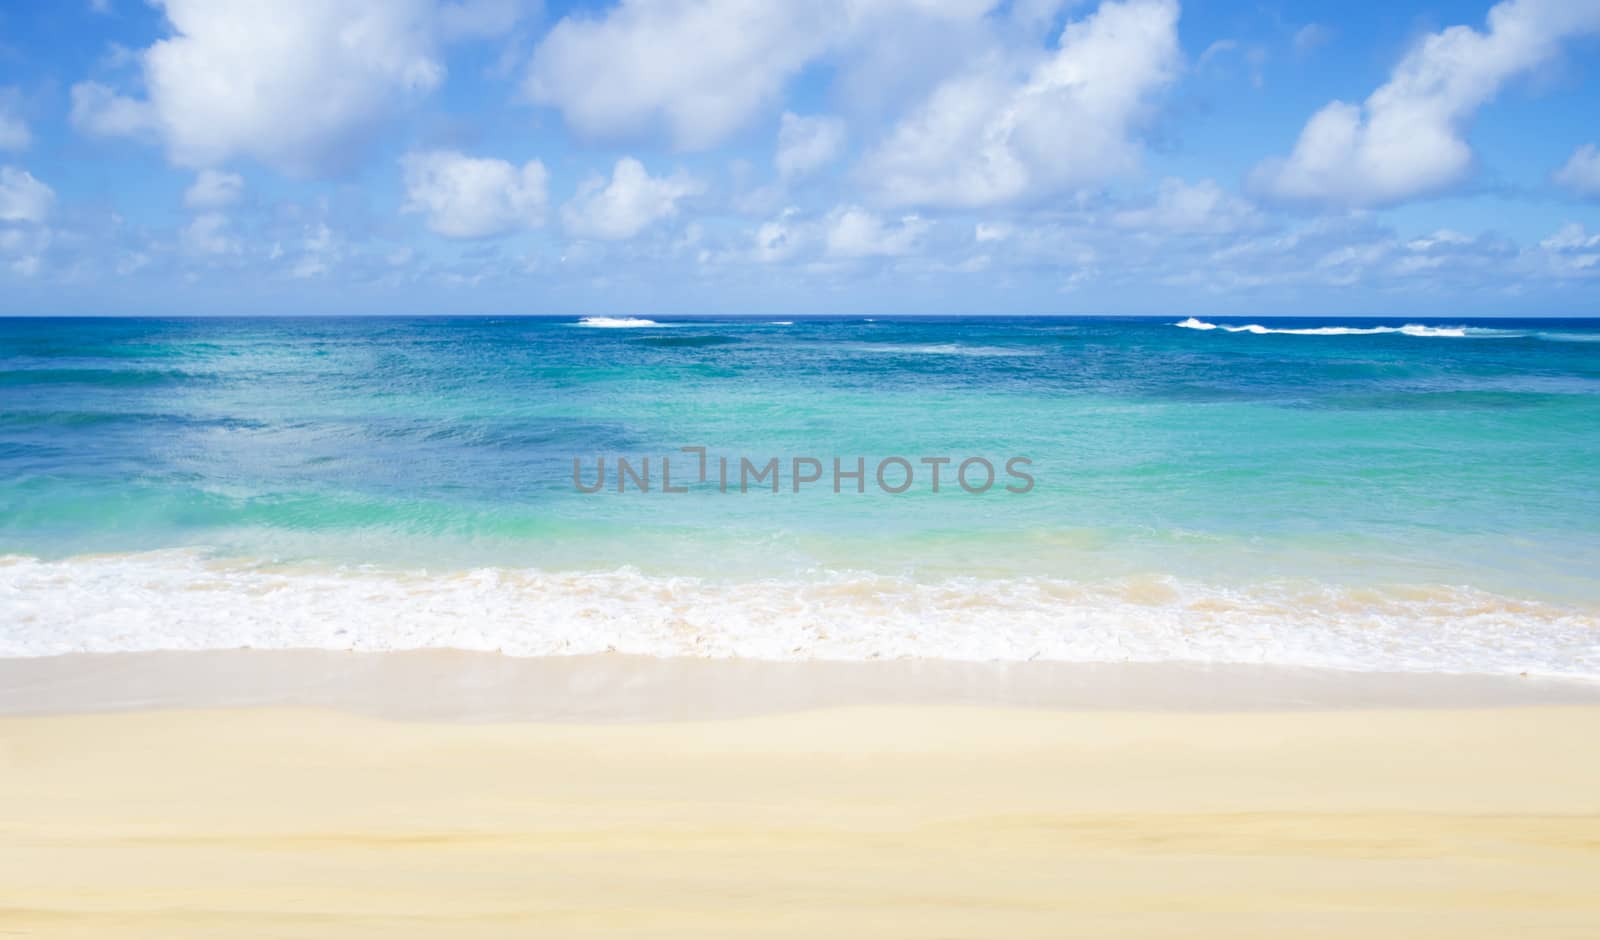 Gentle waves on the sandy beach in Hawaii by EllenSmile